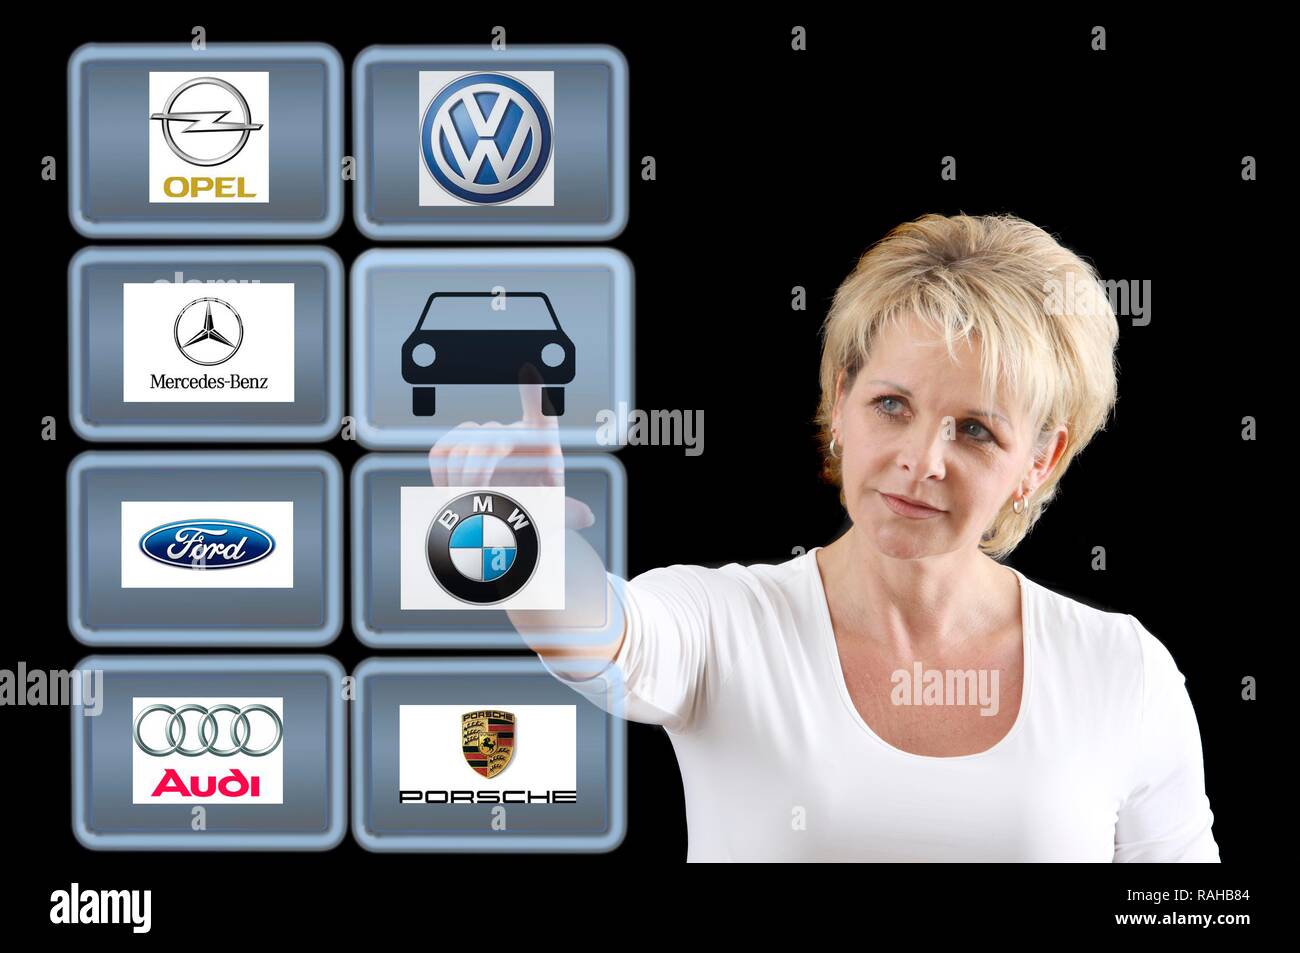 La donna lavora con uno schermo virtuale, touch screen, tedesco auto marche Foto Stock